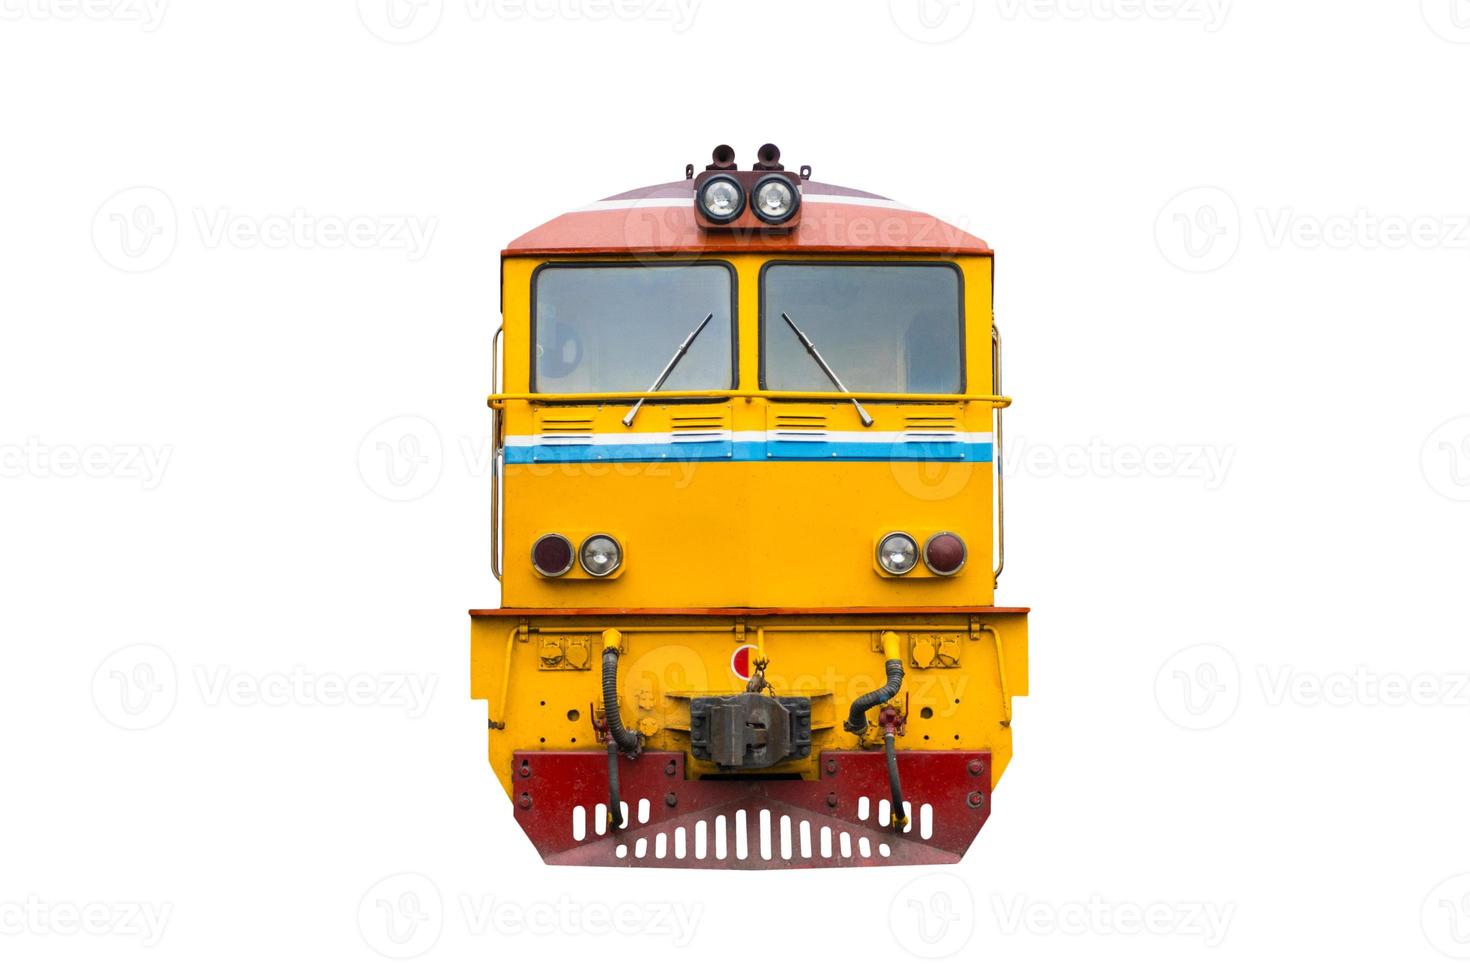 locomotiva elettrica diesel trainata da treno di testa con sfondo bianco isolato foto